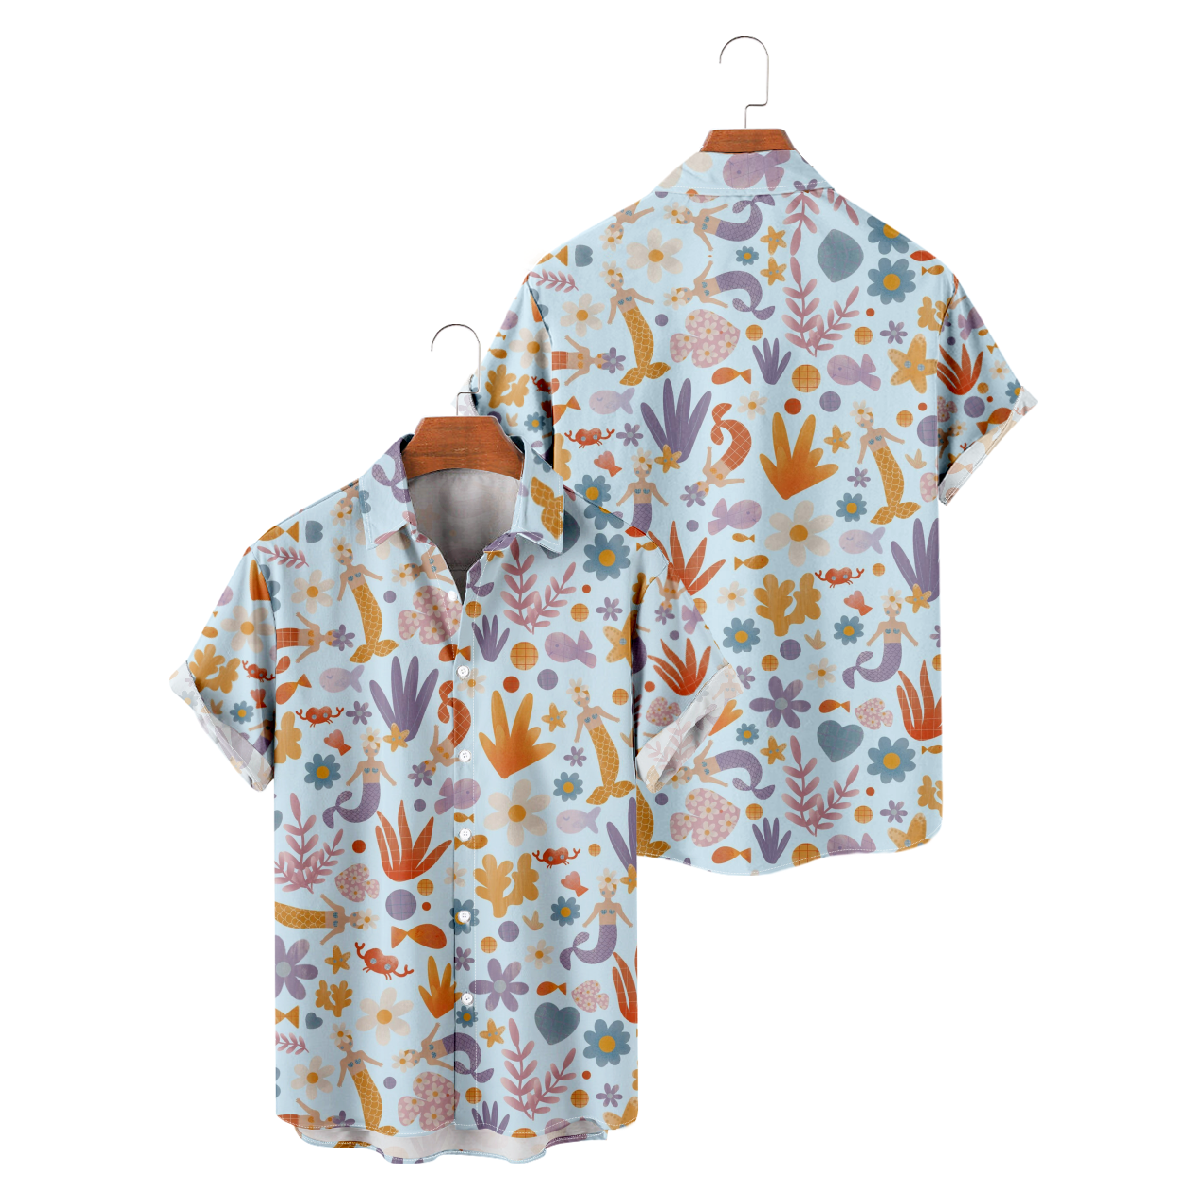 Mermaid Short Sleeve Shirt Men's Allover Print Shirt Button Tops Summer Shirt